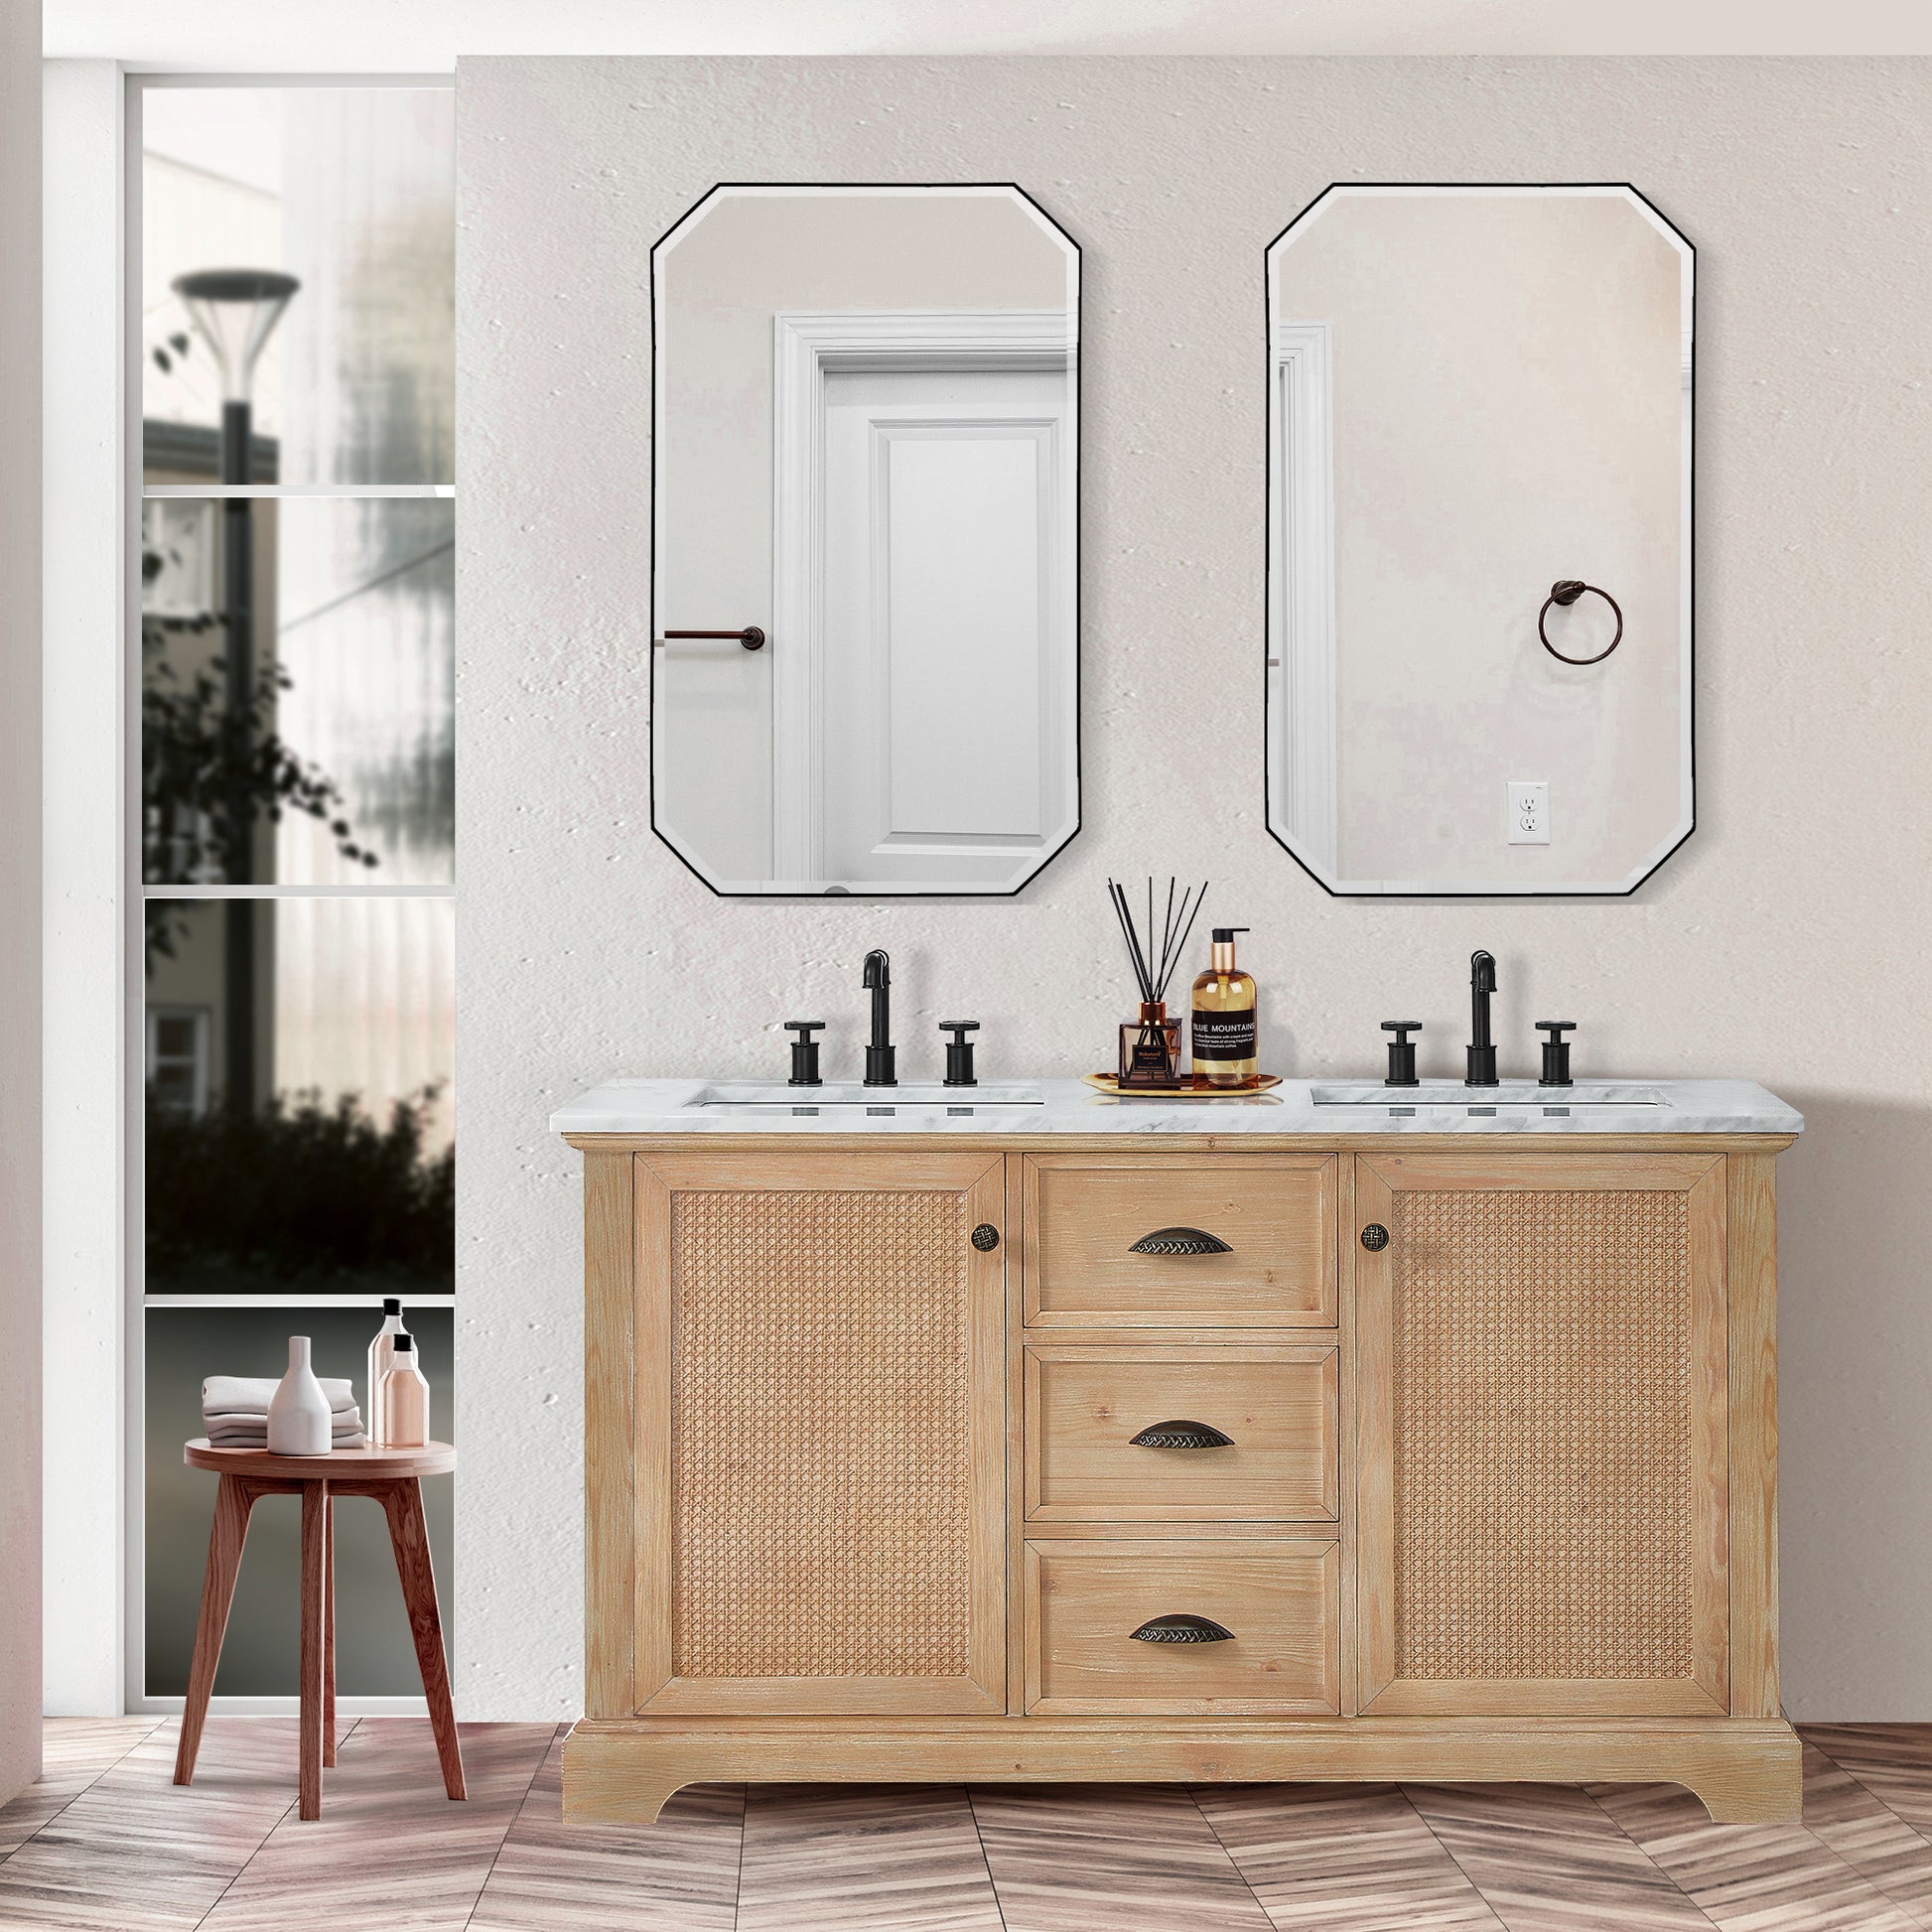 
  
  Hervas Double Sink Vanity | 60", 72" | White Marble, Black Marble Top | Fir Wood | Optional Mirror
  
